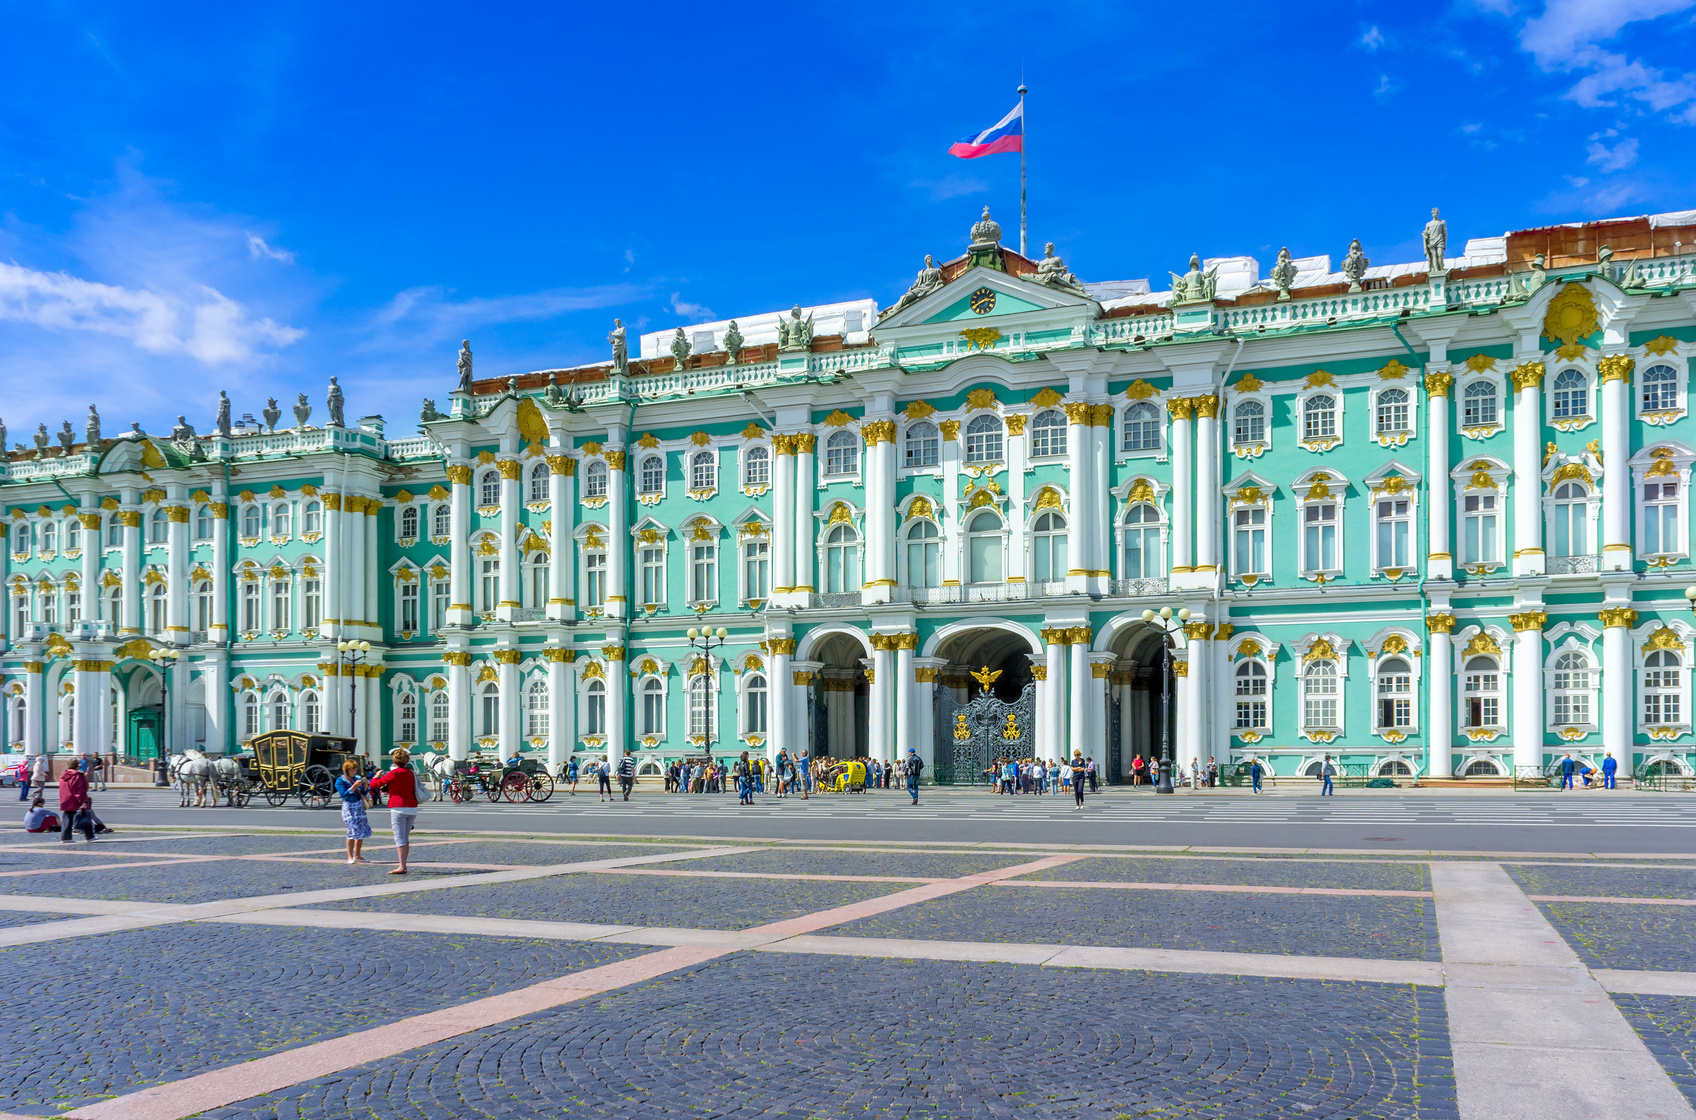 Le palais d'hiver, qui compose l'Ermitage, était autrefois la résidence des empereurs russes.&nbsp;© den781, fotolia